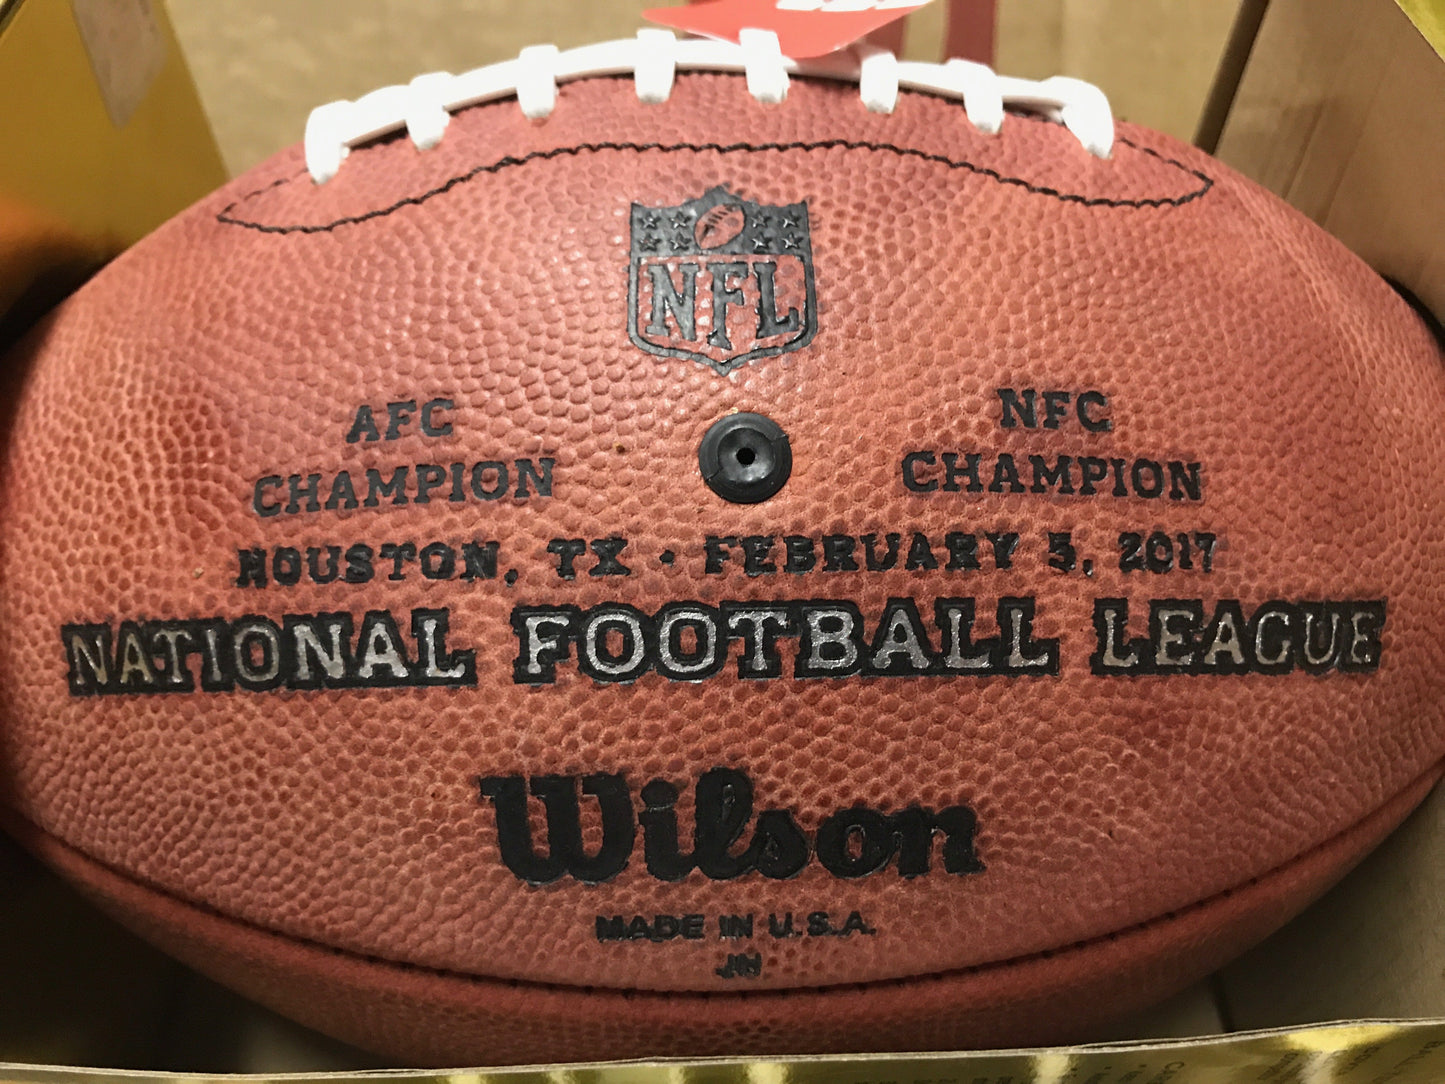 Wilson Superbowl 51 "The Duke" Game Football